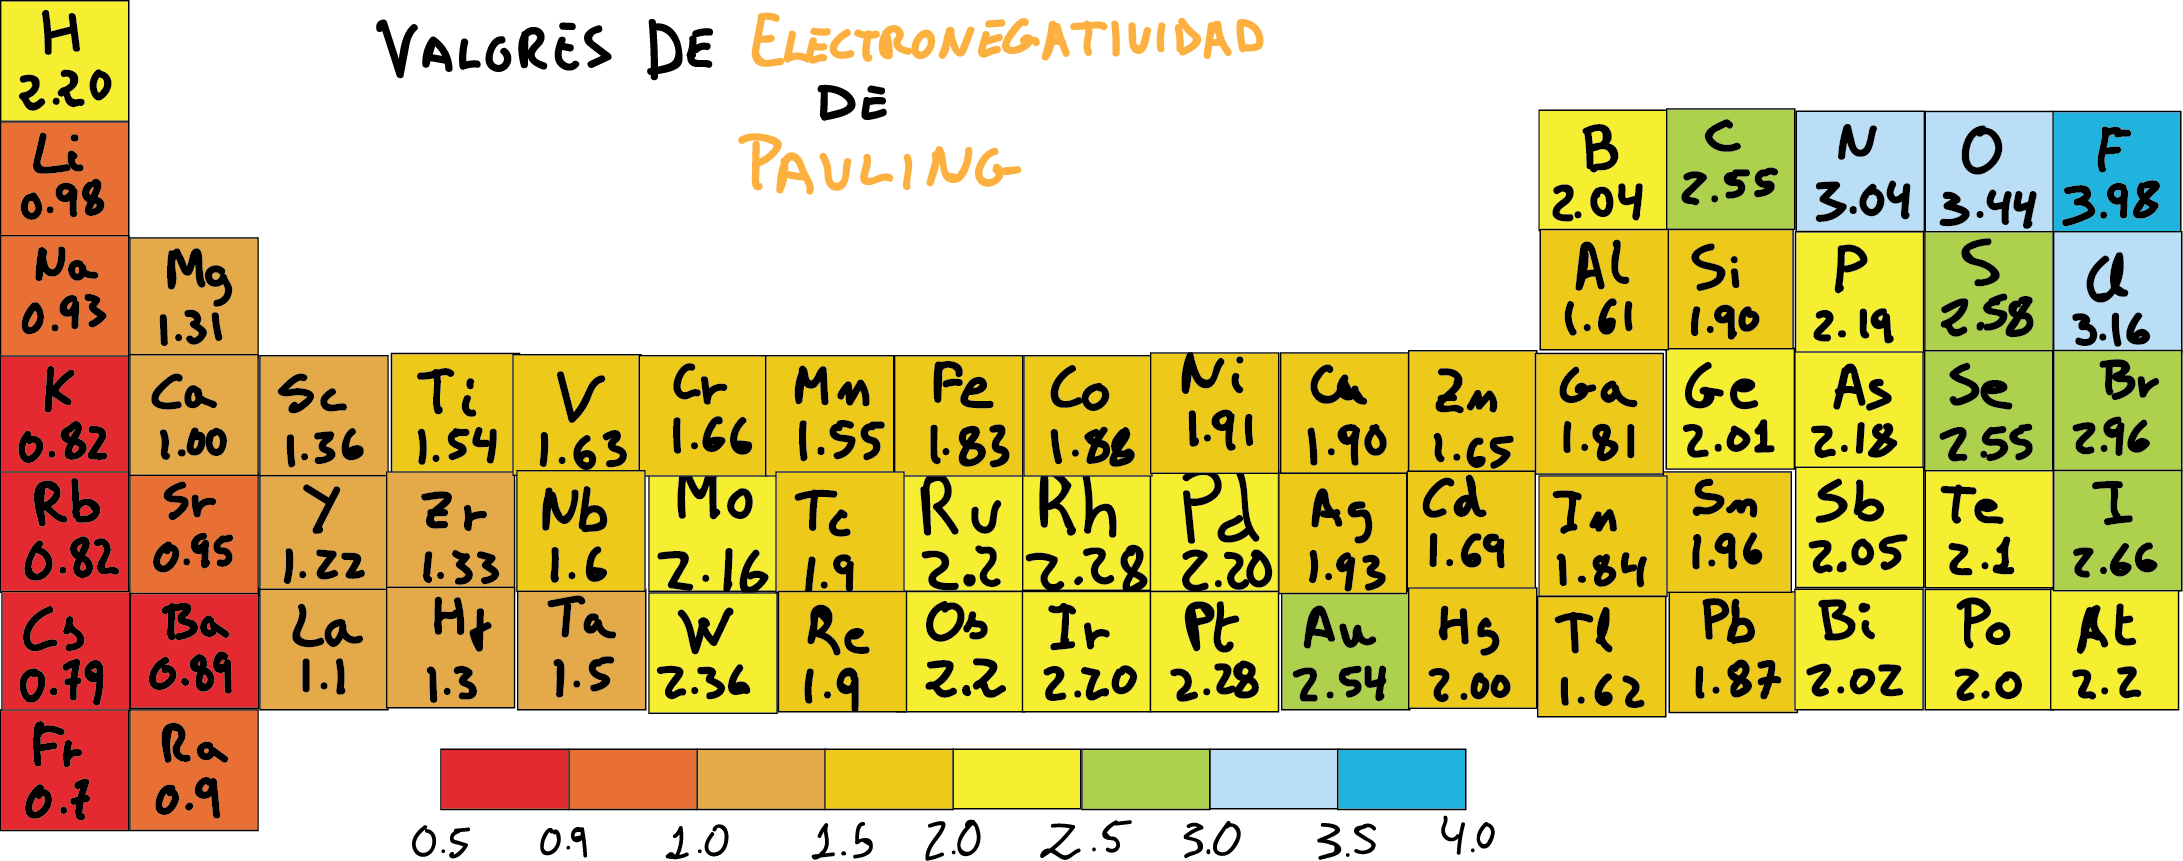 tabla de electronegatividad de Pauling